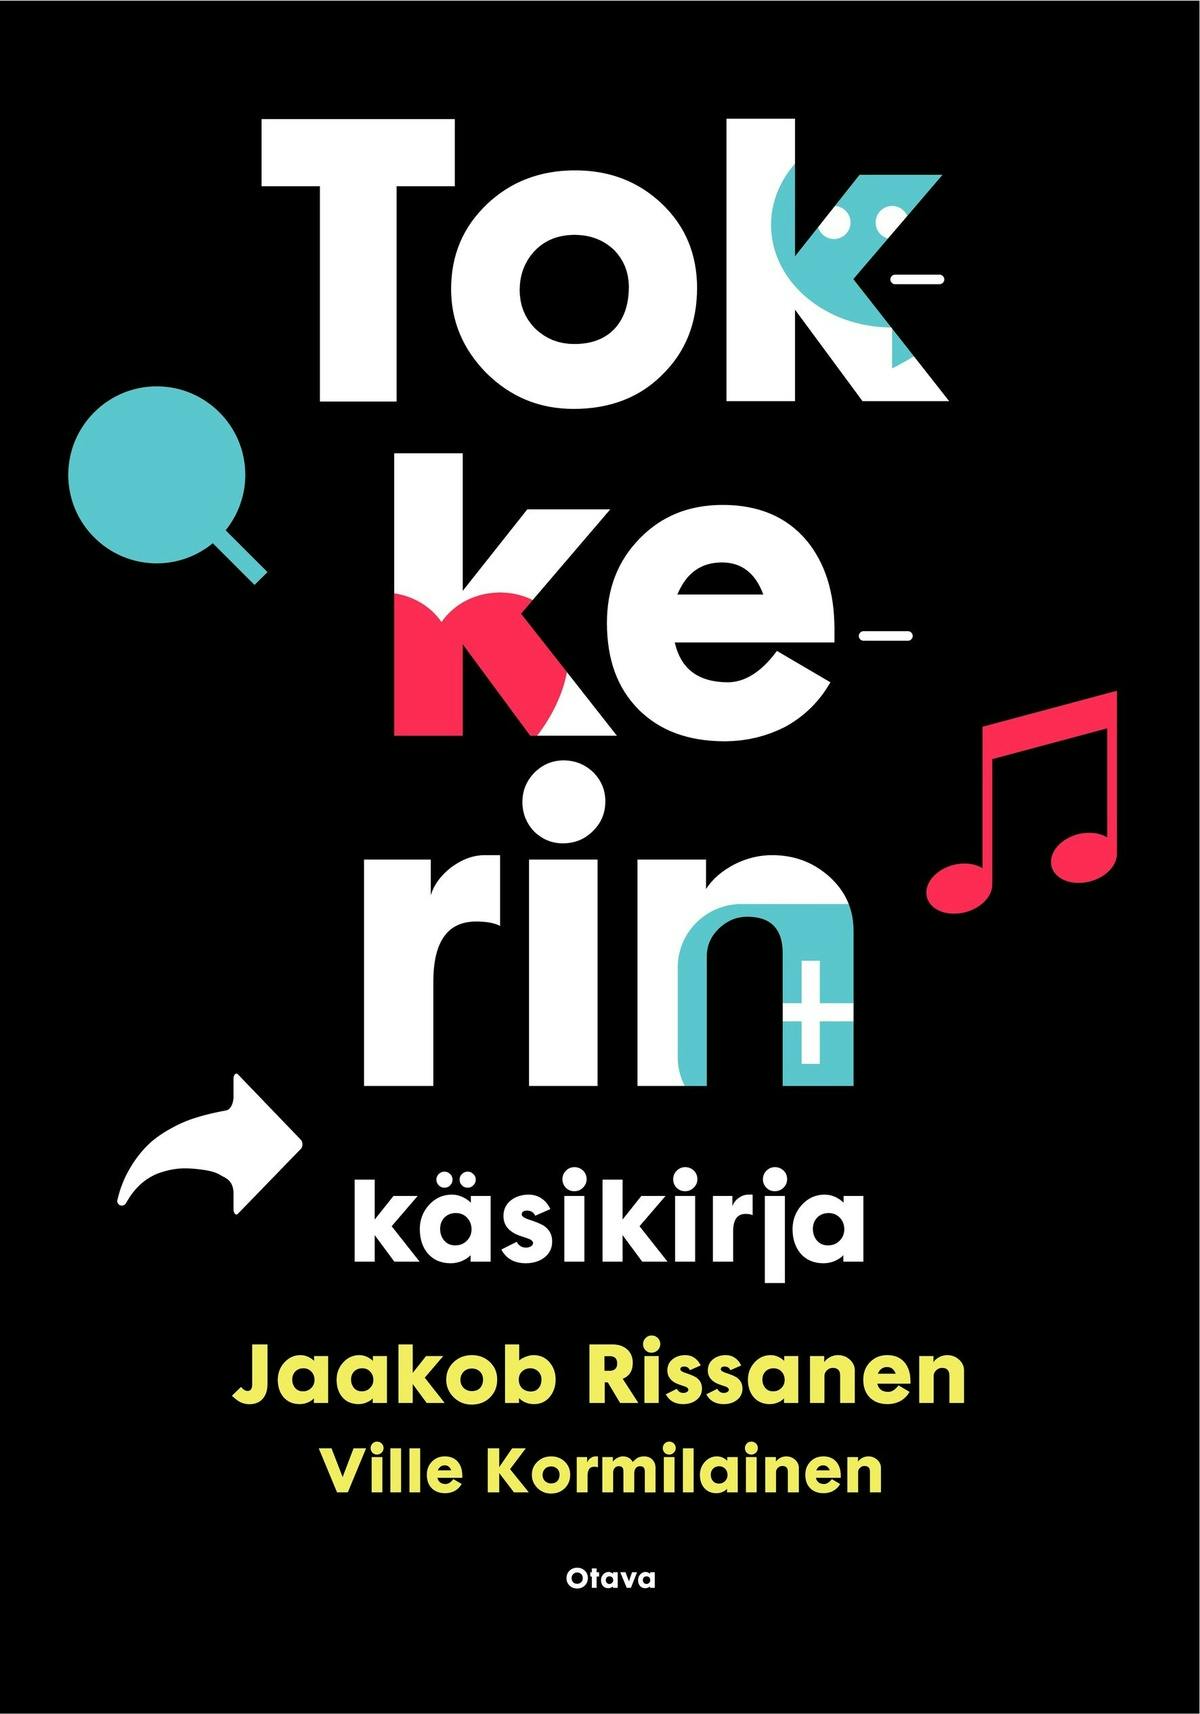 Tokkerin käsikirja - Jaakob Rissanen, Ville Kormilainen